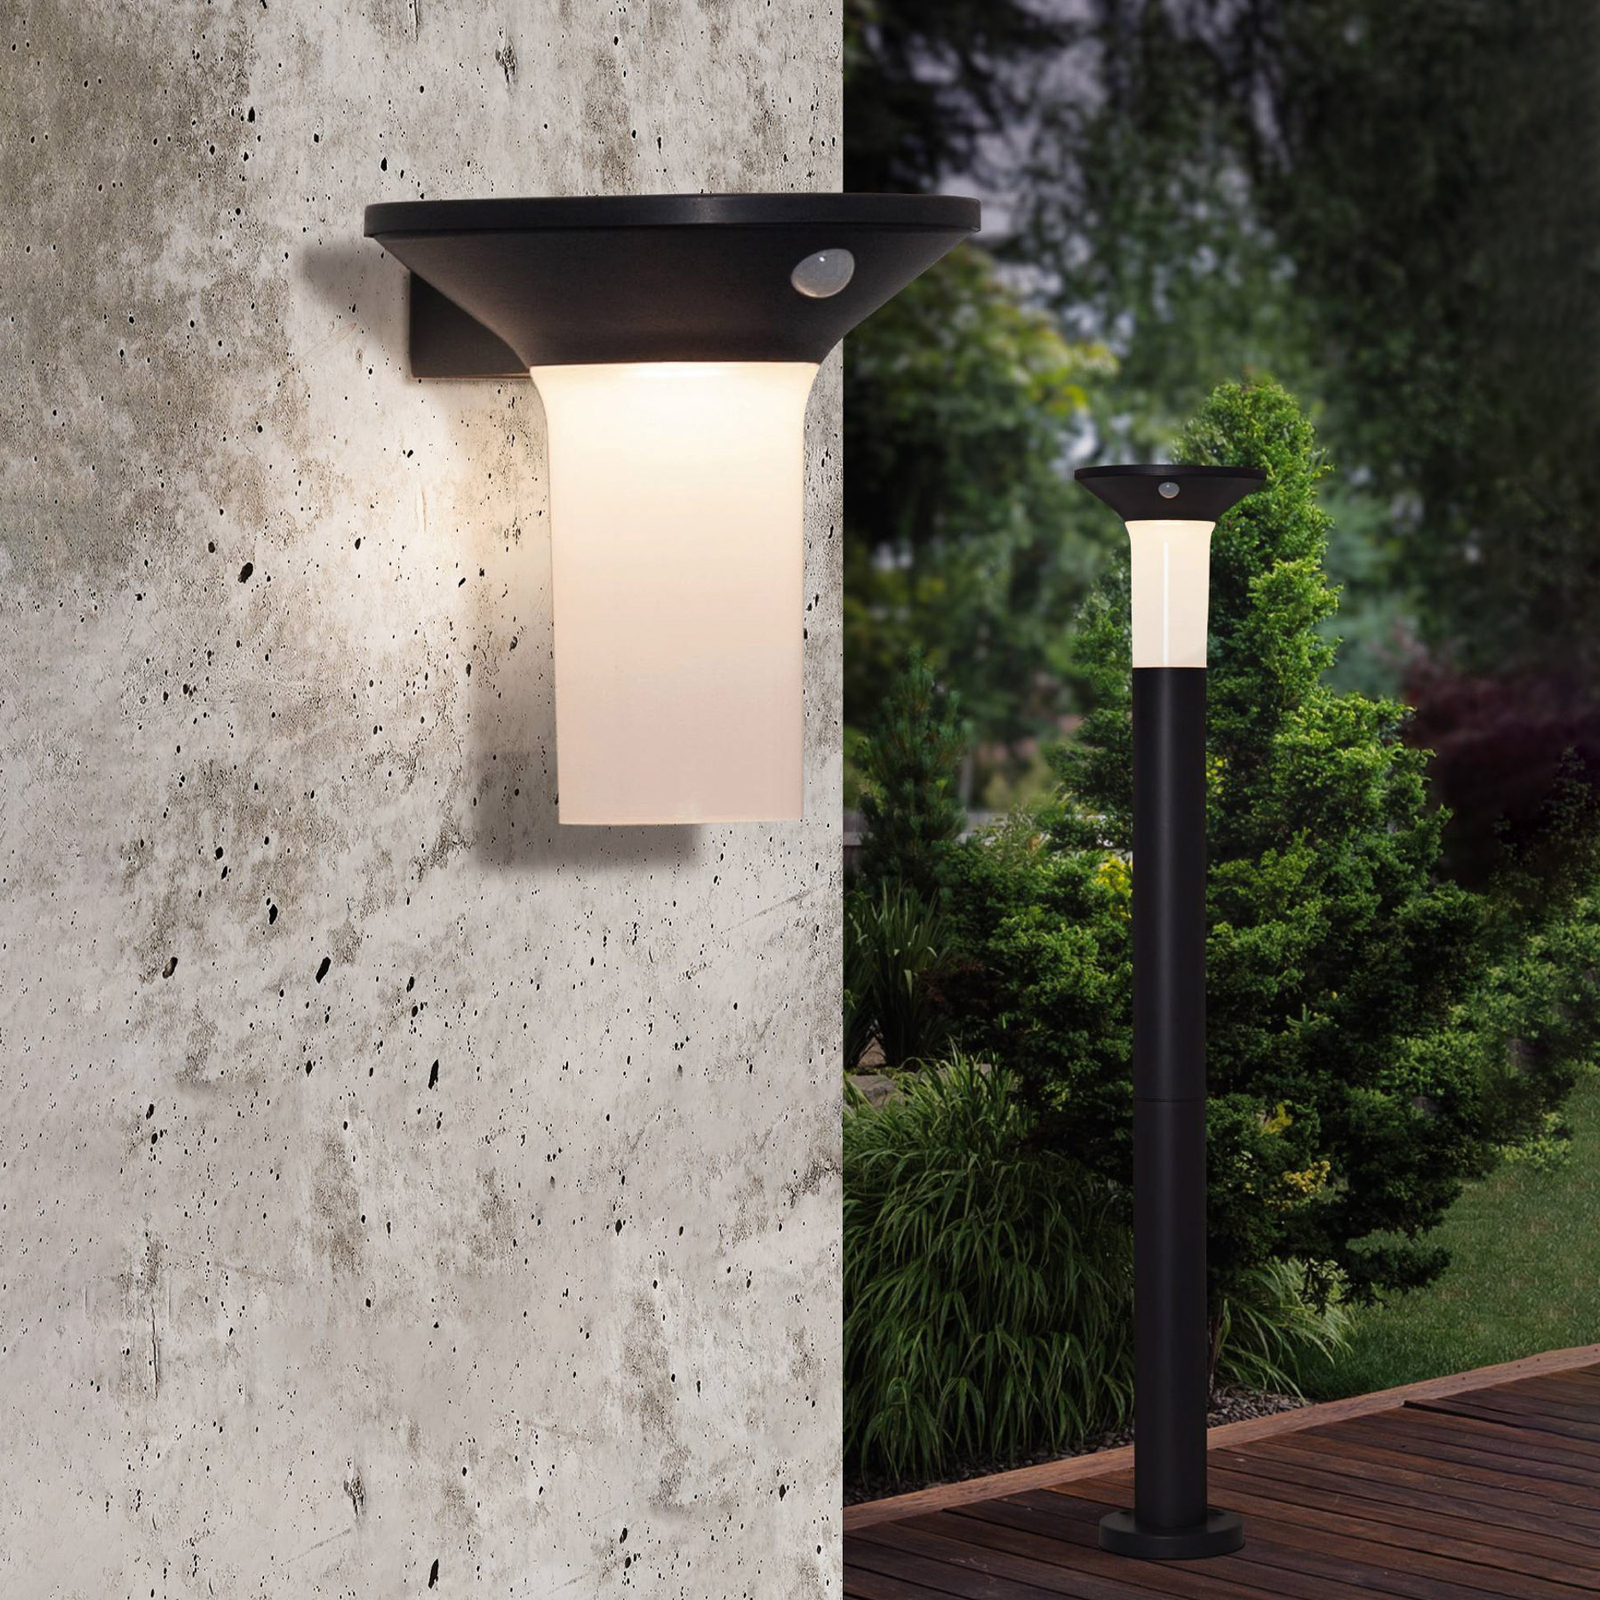 Corbezzola LED solar outdoor wall light sensor